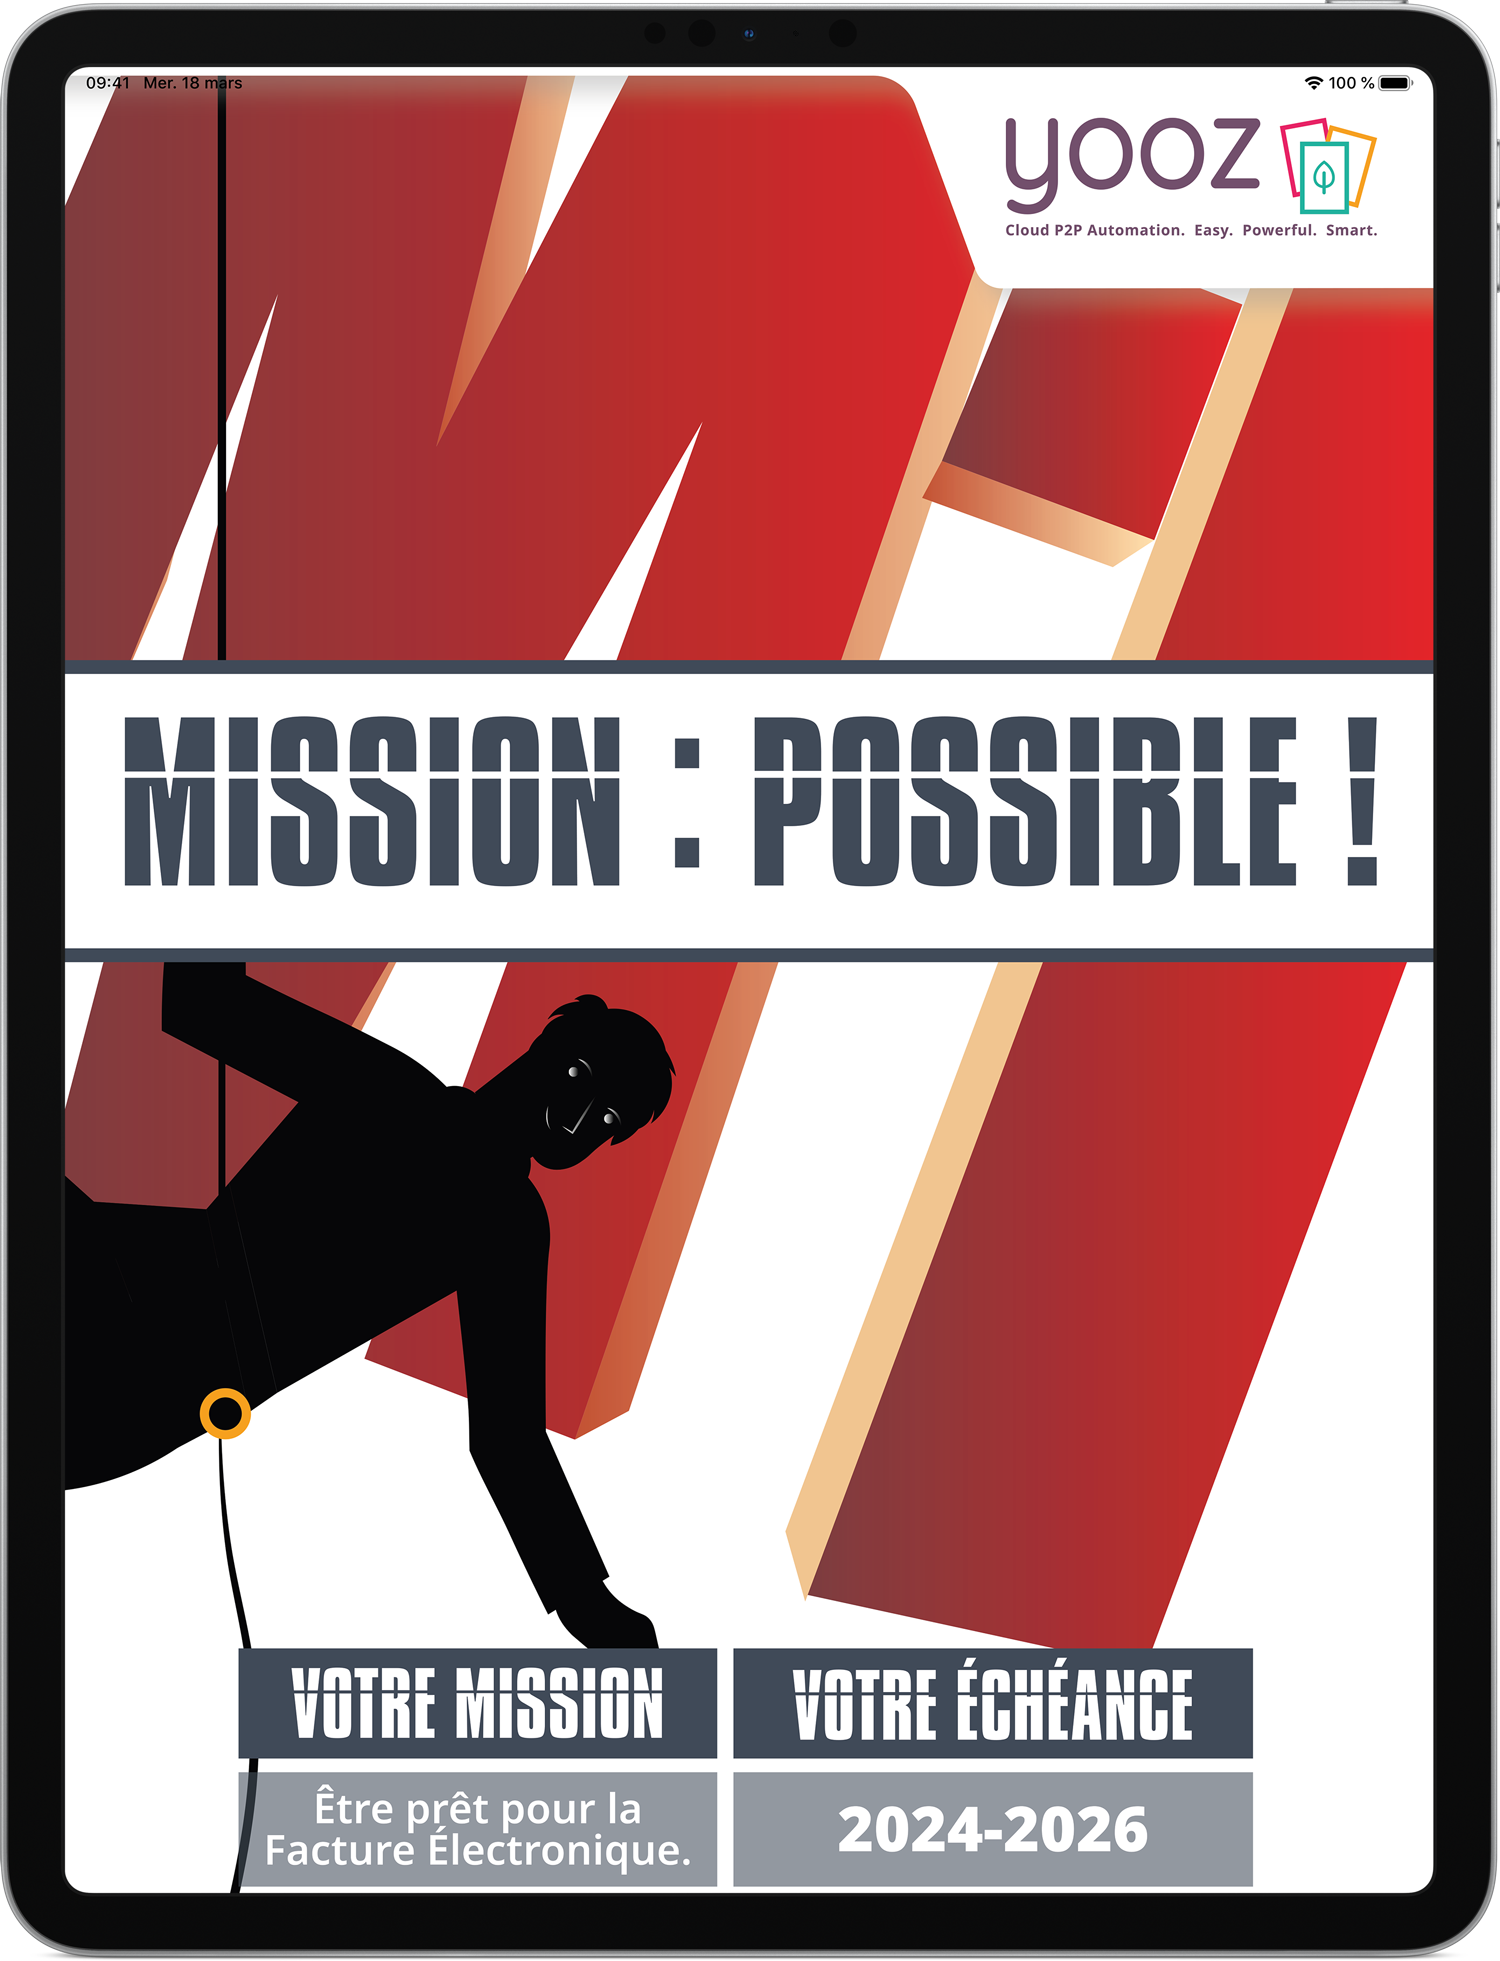 Livre Blanc : Facture Electronique - Mission Possible 2024-2026